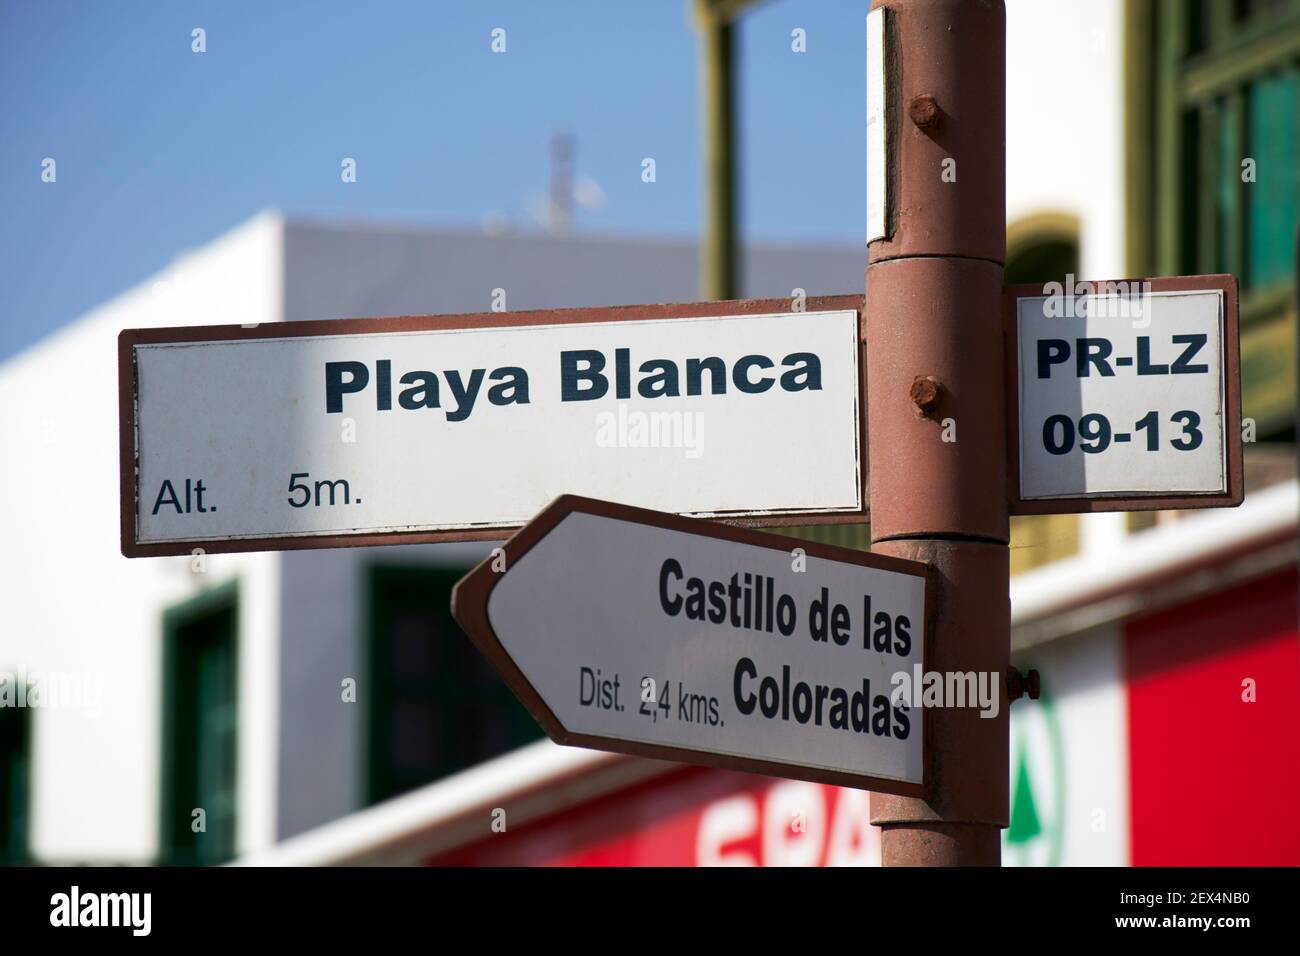 signs for playa blanca and castillo de las coloradas playa blanca Lanzarote Canary Islands Spain Stock Photo